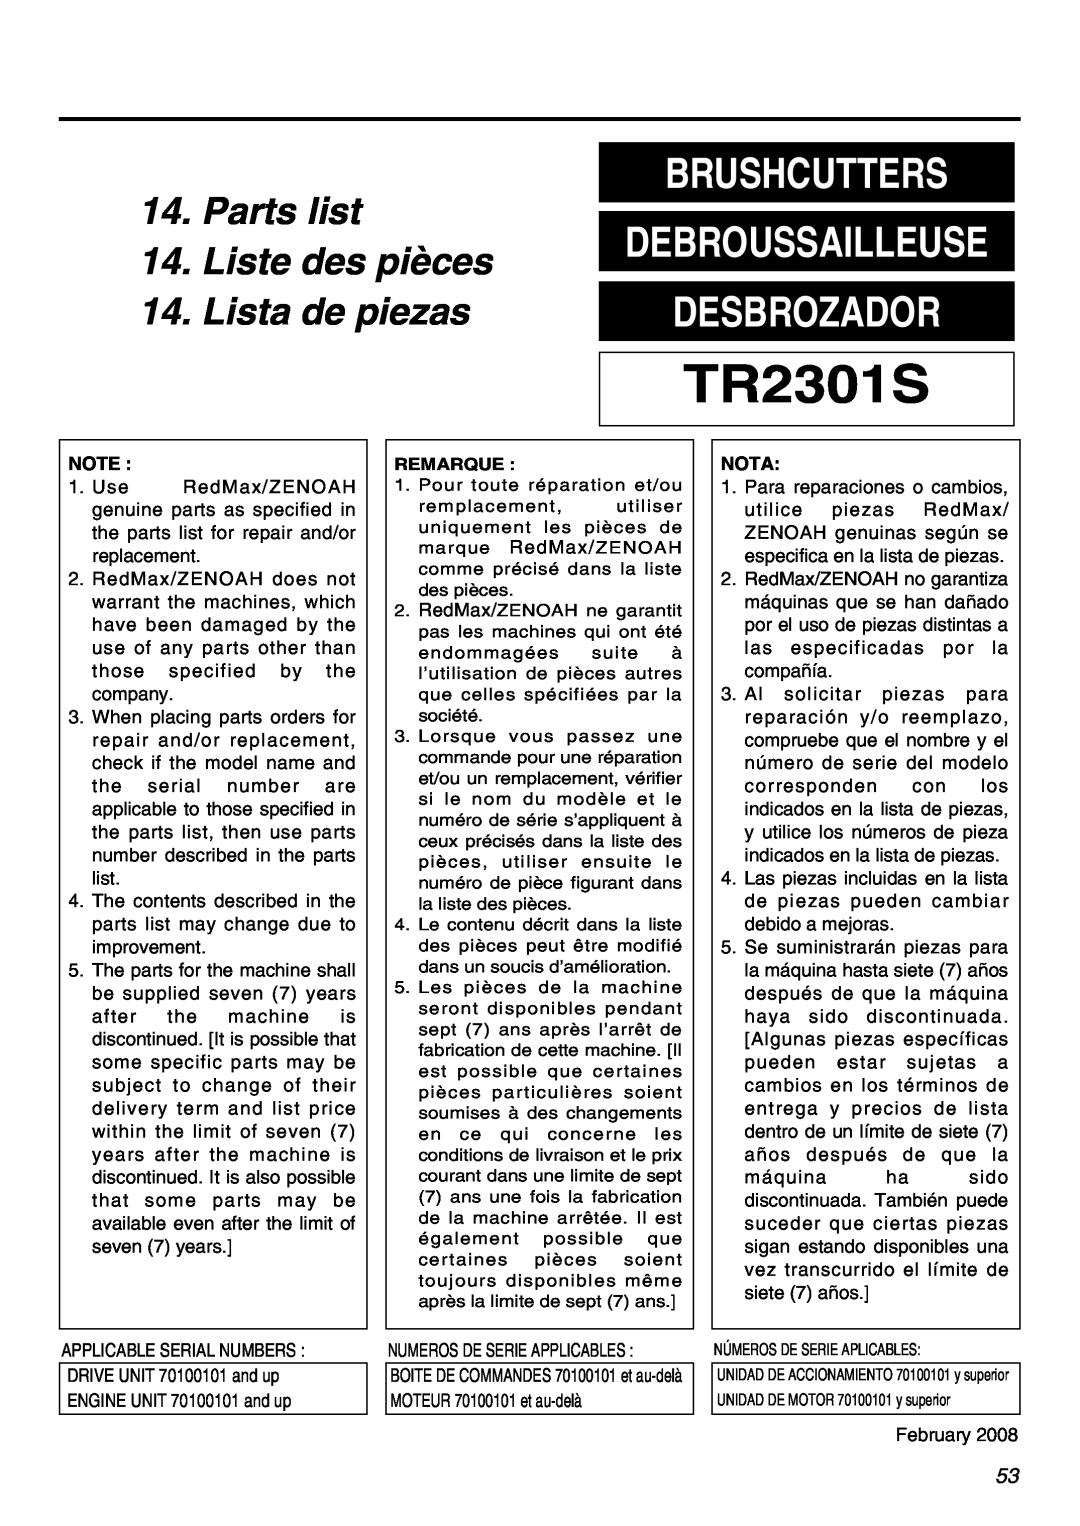 Zenoah TR2301S manual Parts list, Liste des pièces, Lista de piezas, Brushcutters, Desbrozador, Debroussailleuse 